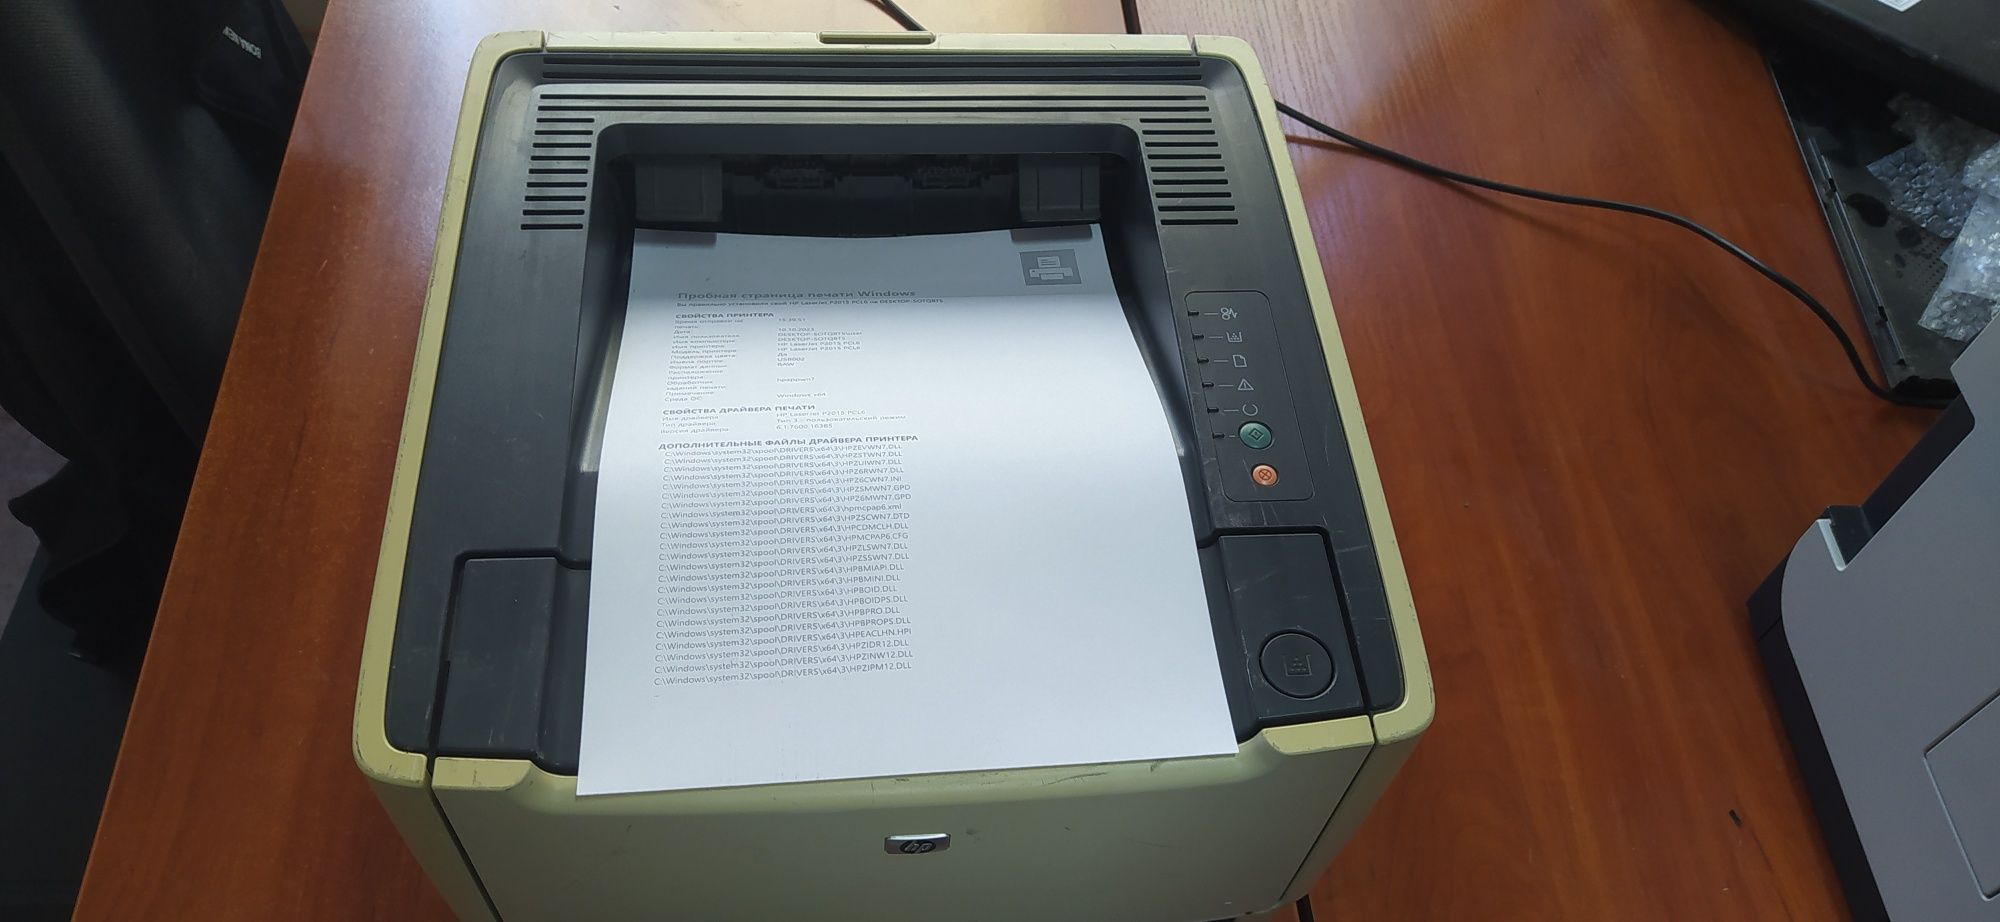 Продам принтер б/у HP 2015